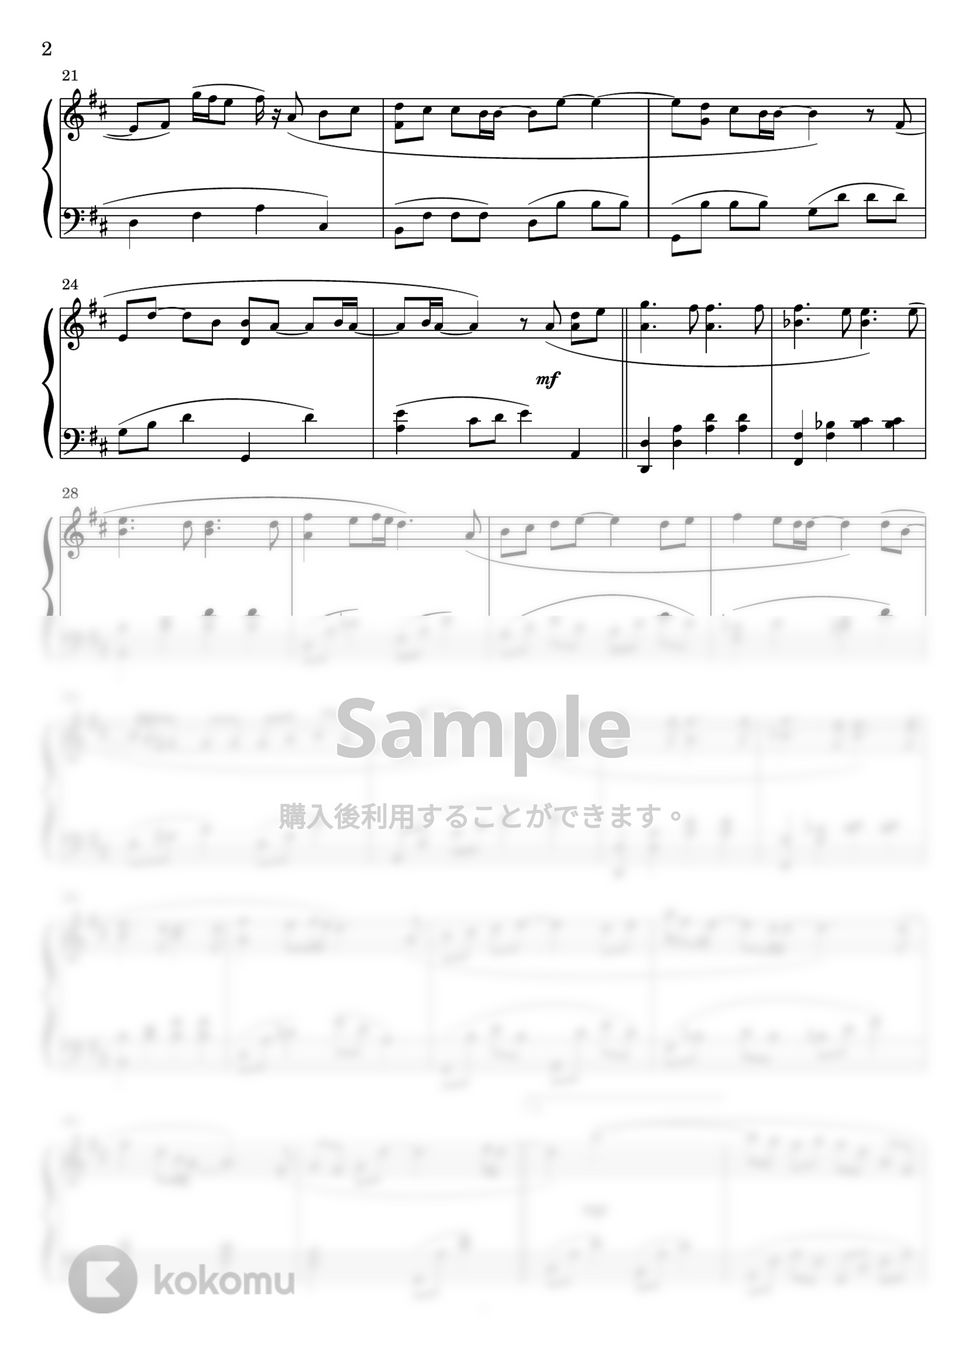 サザンオールスターズ - TSUNAMI (フルサイズver.) (ピアノソロ) by Miz